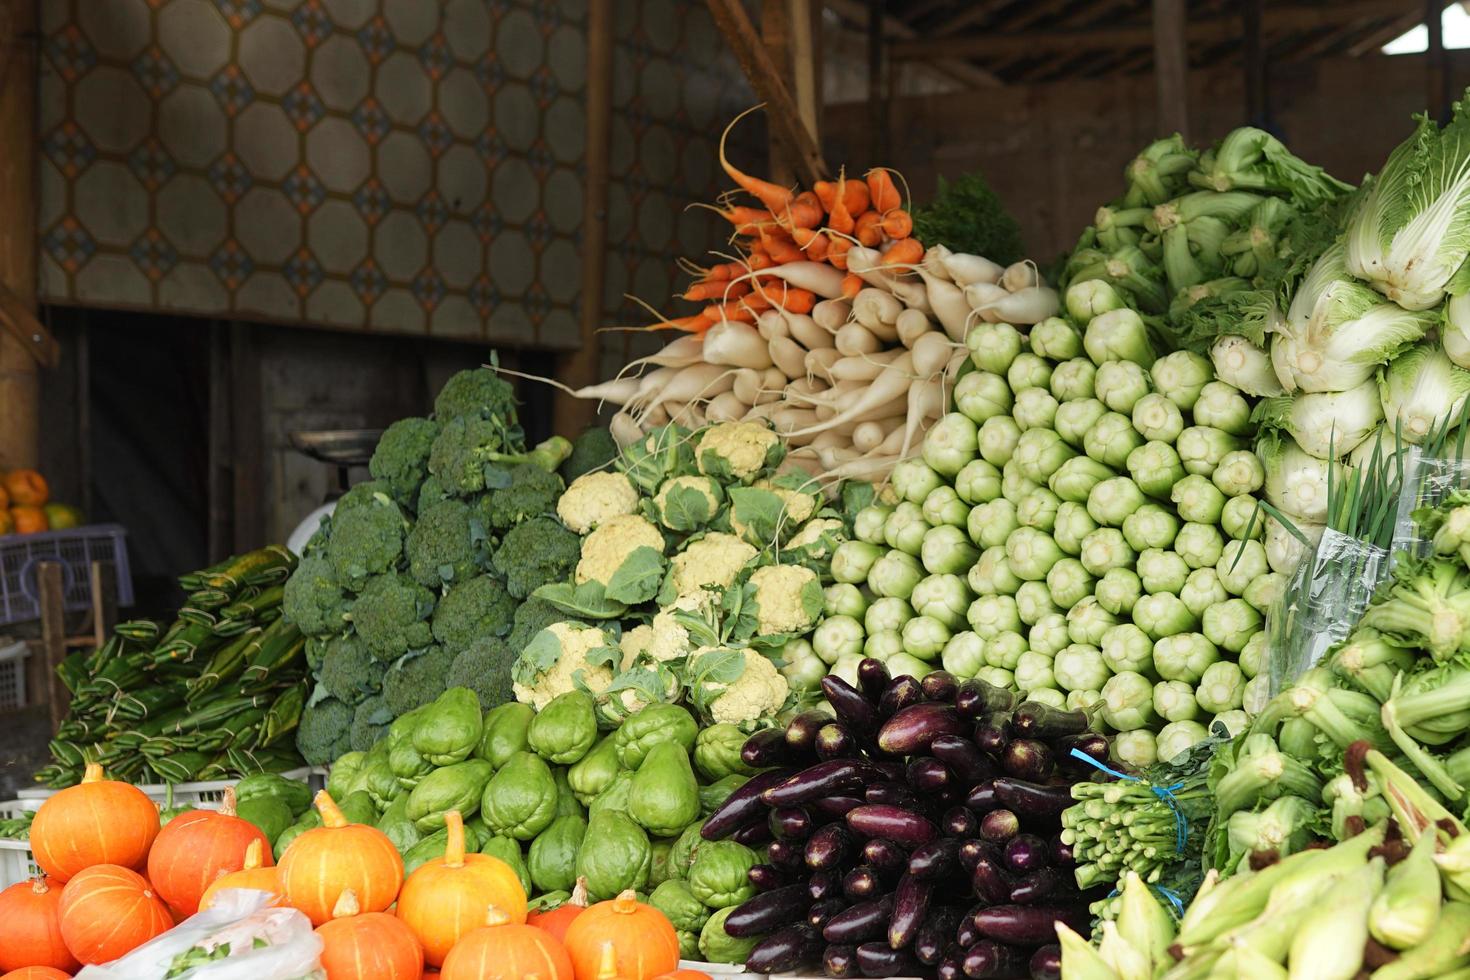 divers types de légumes frais et sains sur les marchés traditionnels. fond de légumes colorés photo